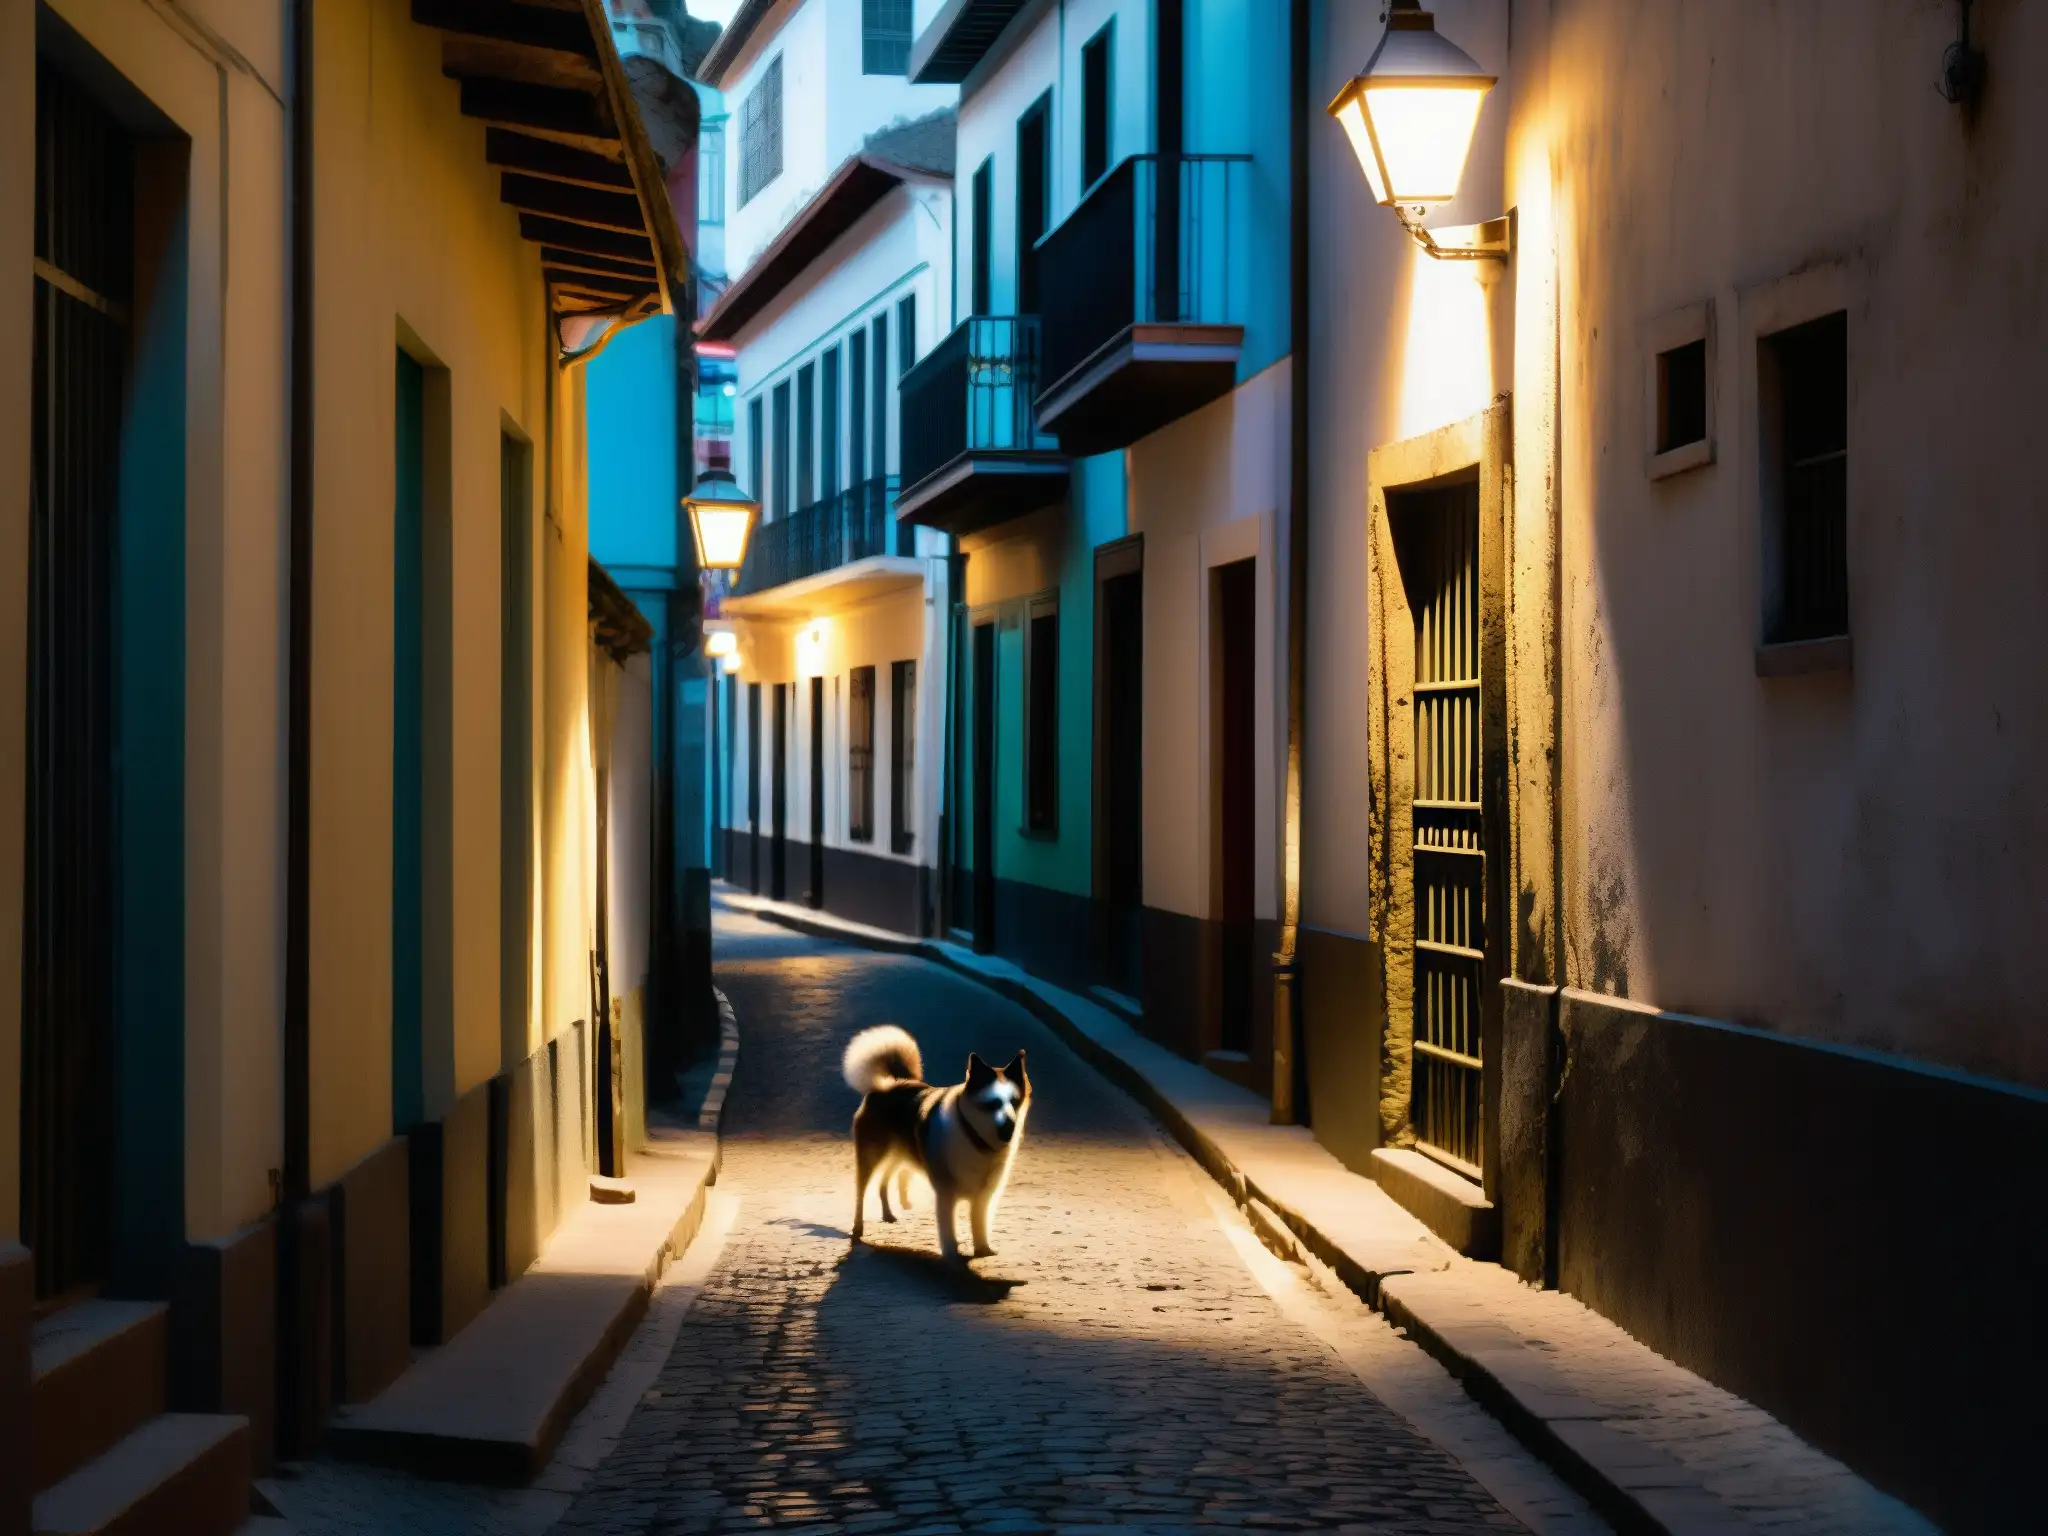 Una callejuela siniestra y oscura en una ciudad sudamericana, con un farol solitario que proyecta largas sombras sobre el suelo empedrado